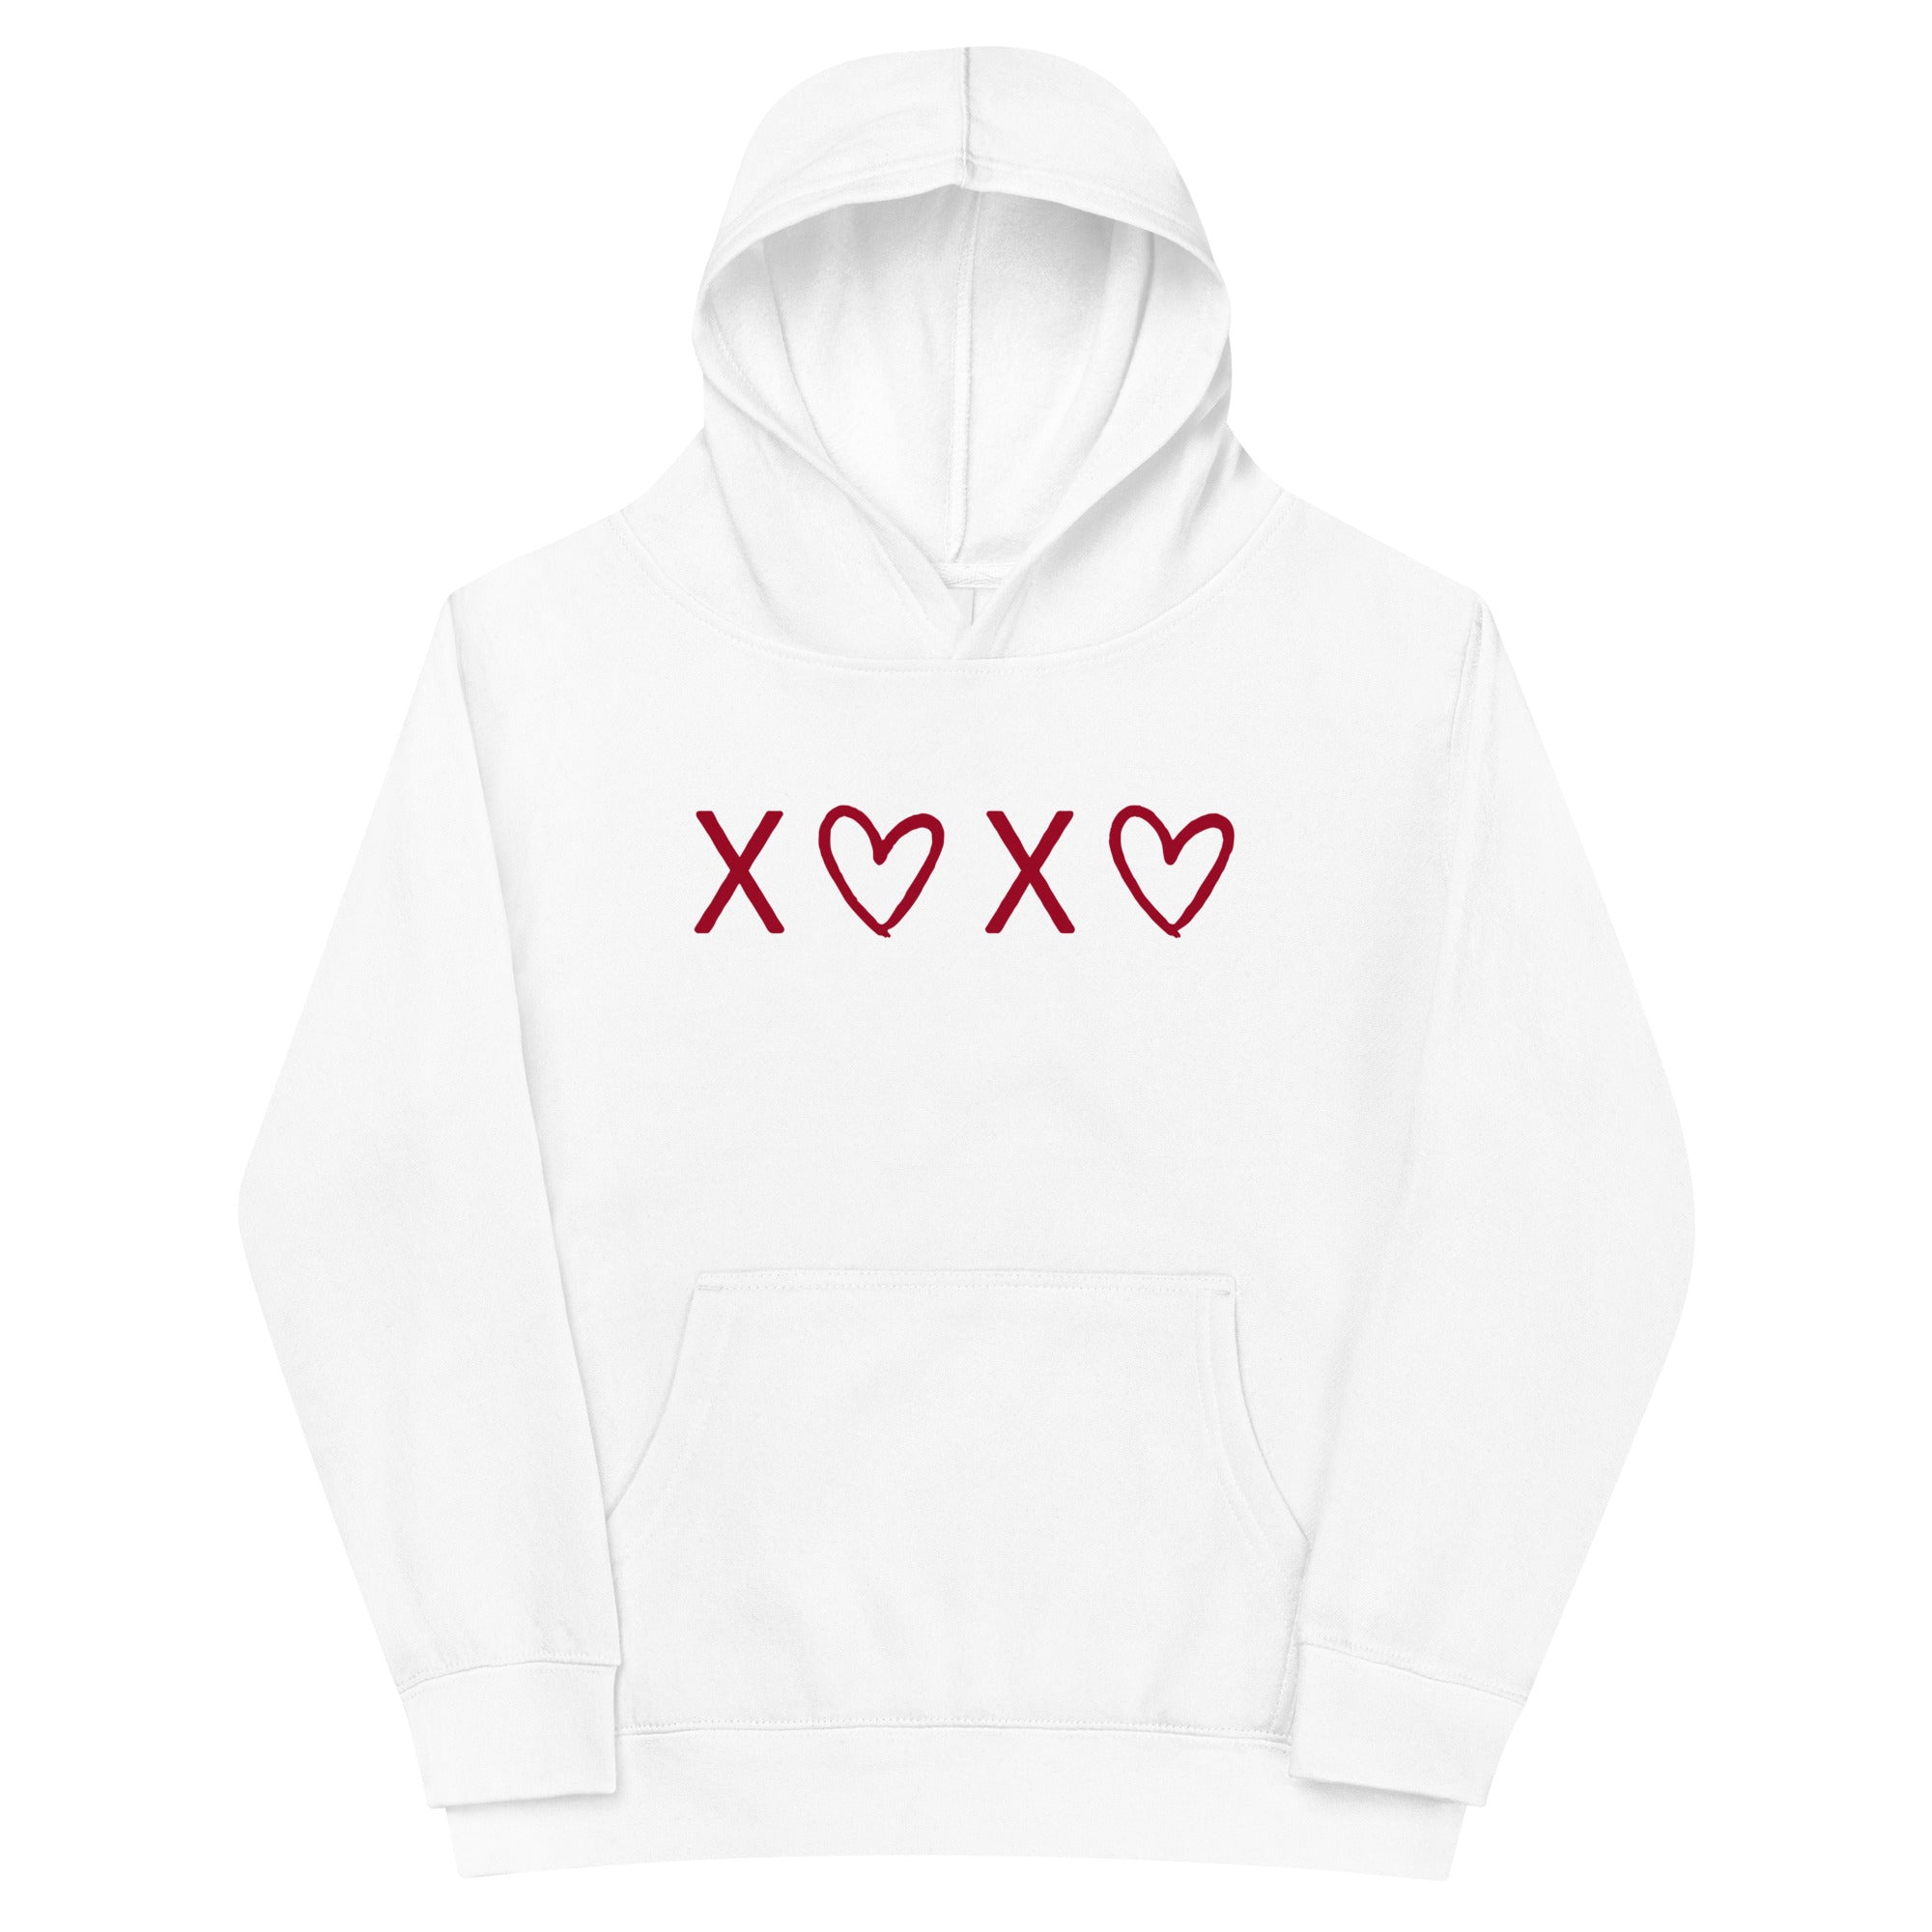 XOXO Kids Sweatshirt